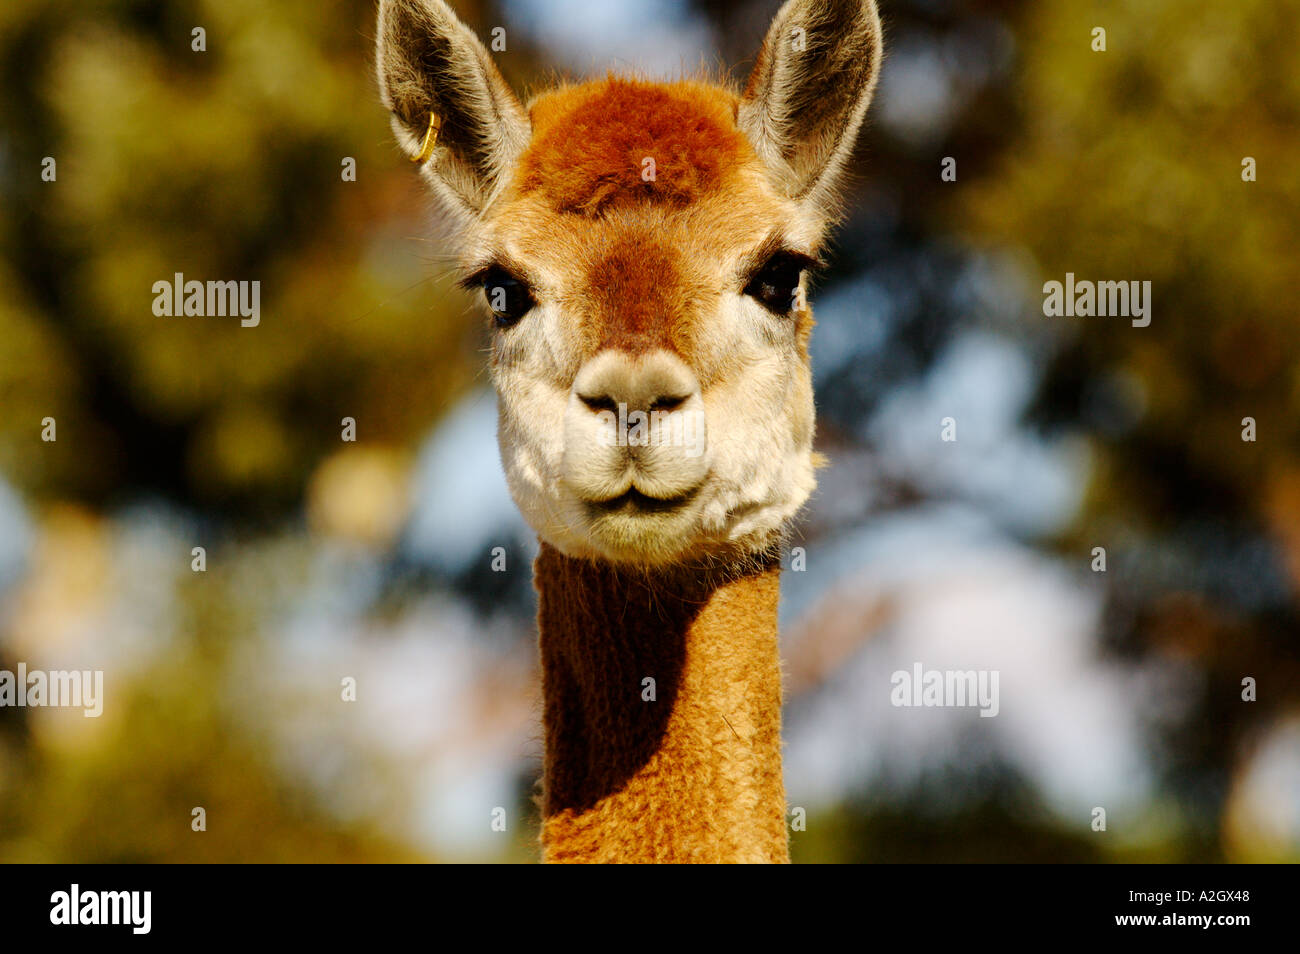 South Australia, Alpaca in farm Stock Photo - Alamy